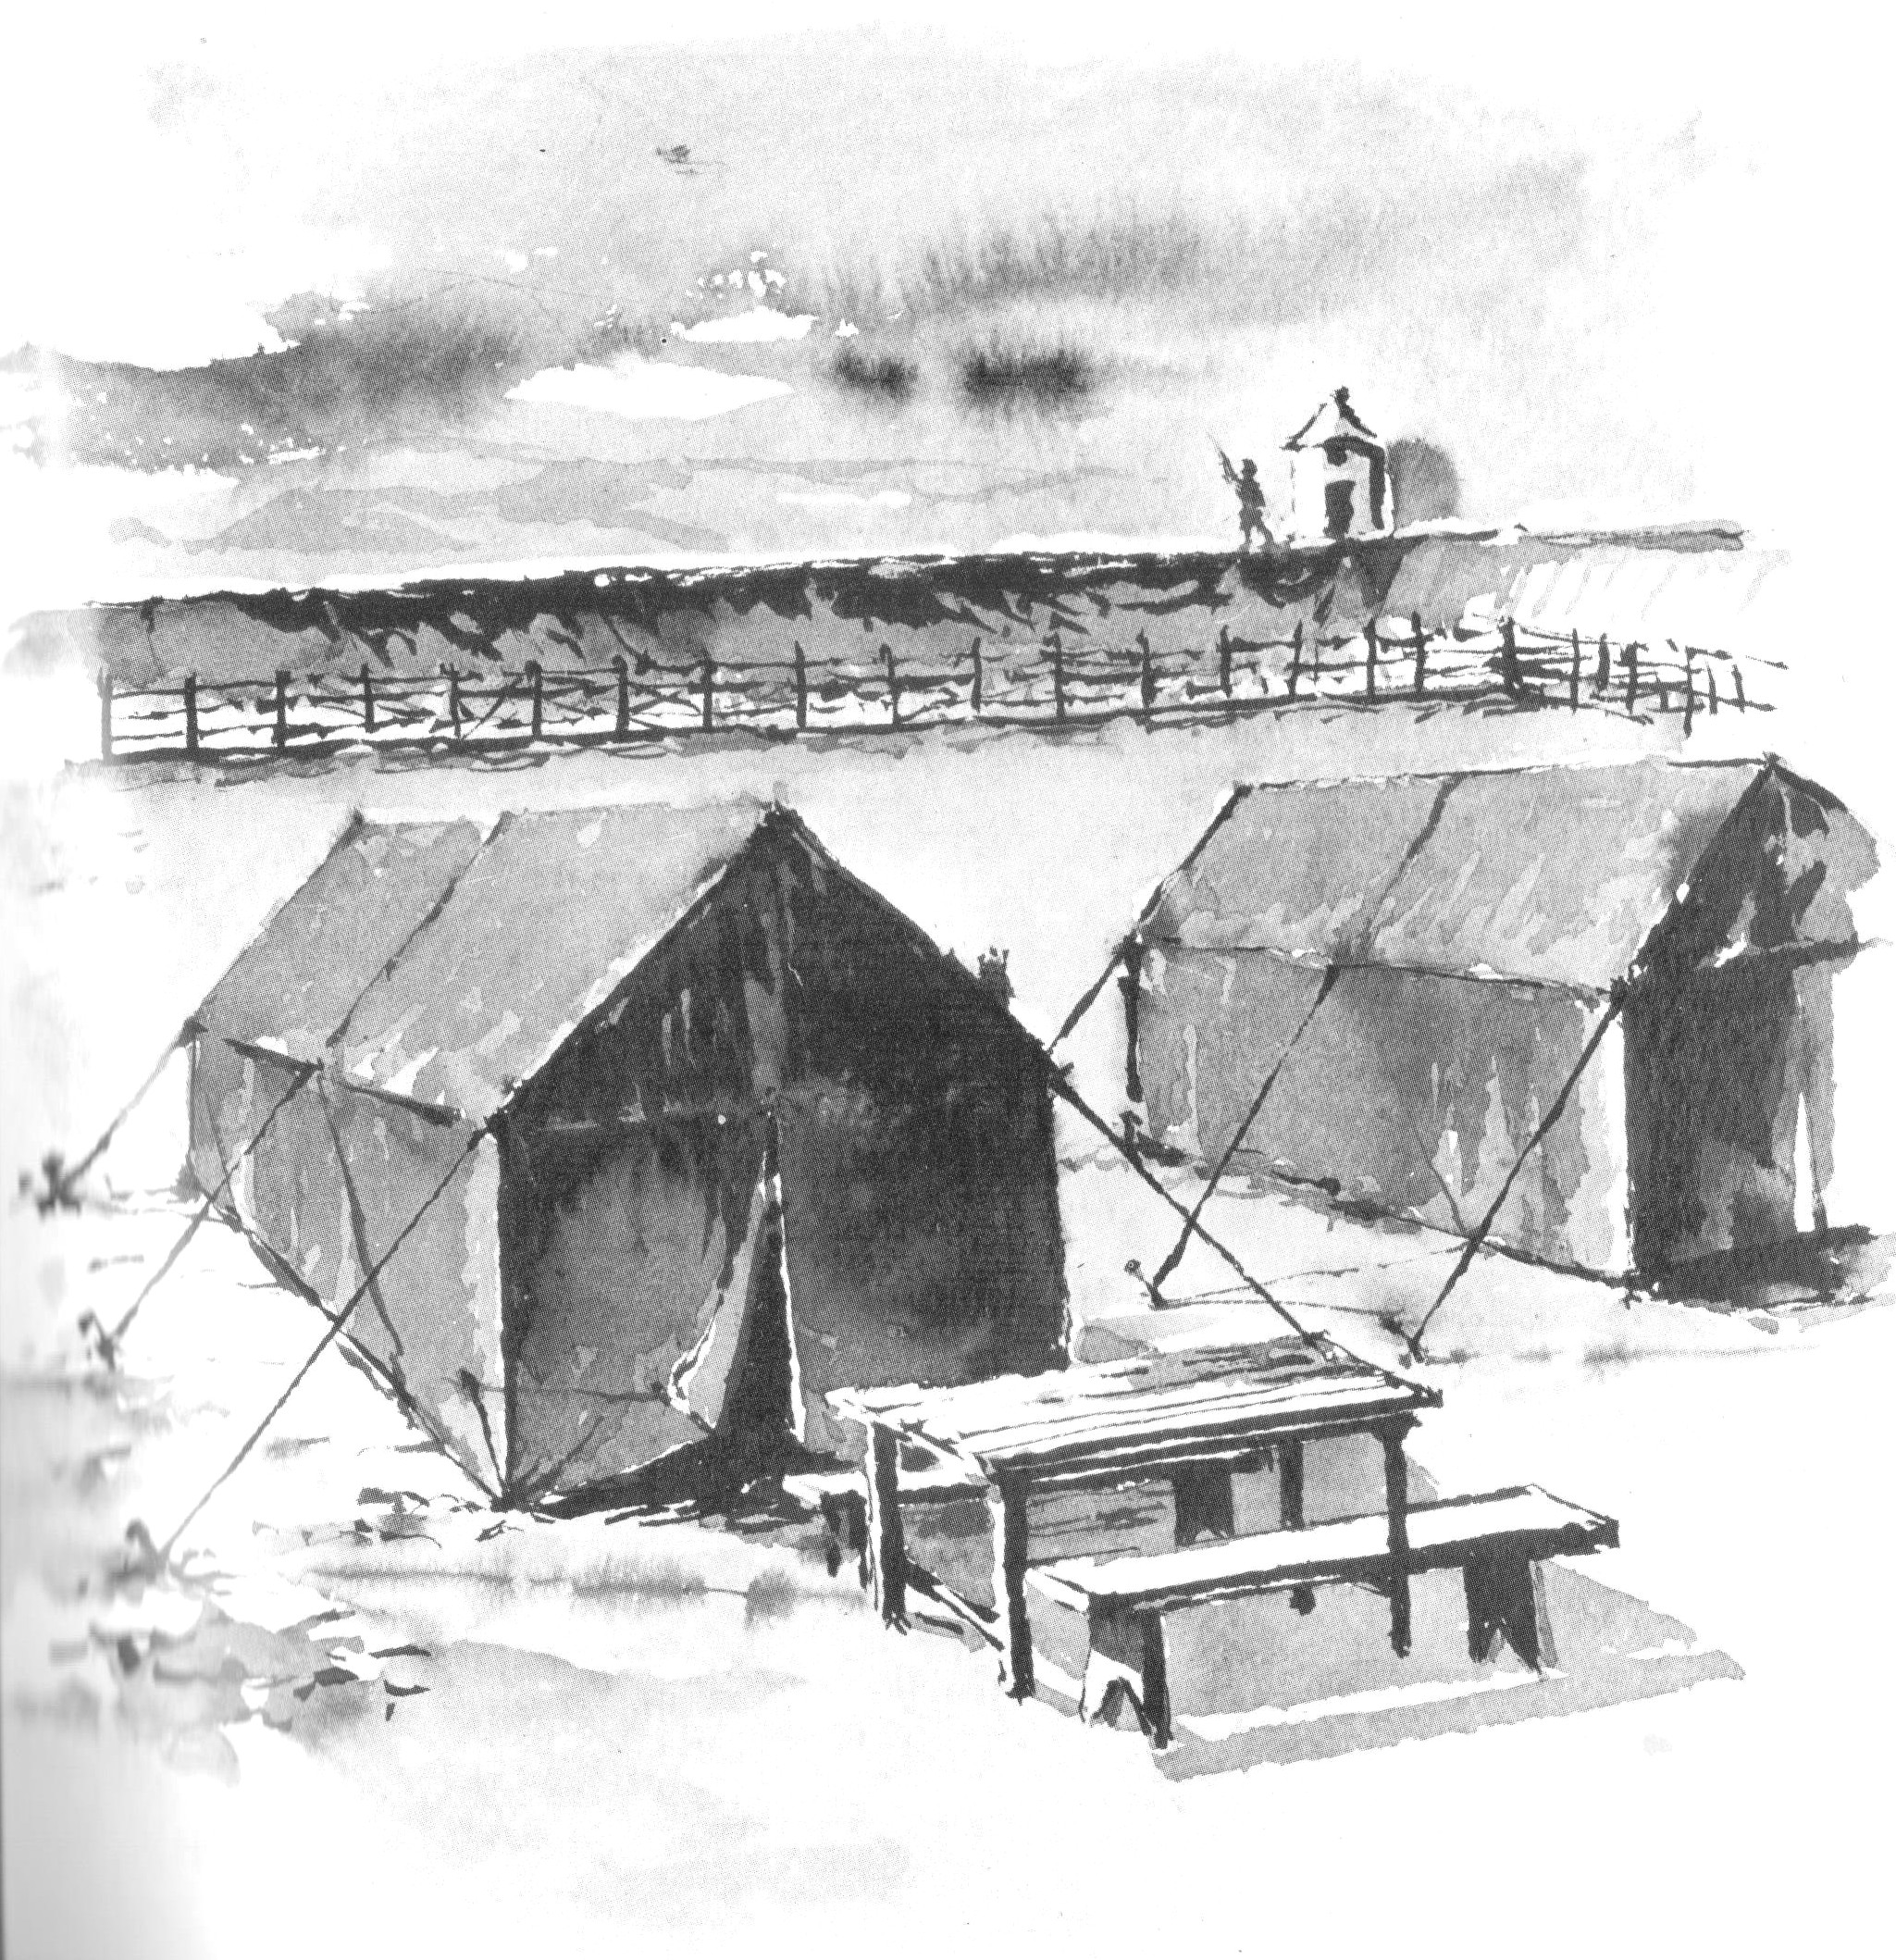 Tendas de lona no início do funcionamento do Campo de Concentração do Tarrafal (desenho de Rogério Amaral)